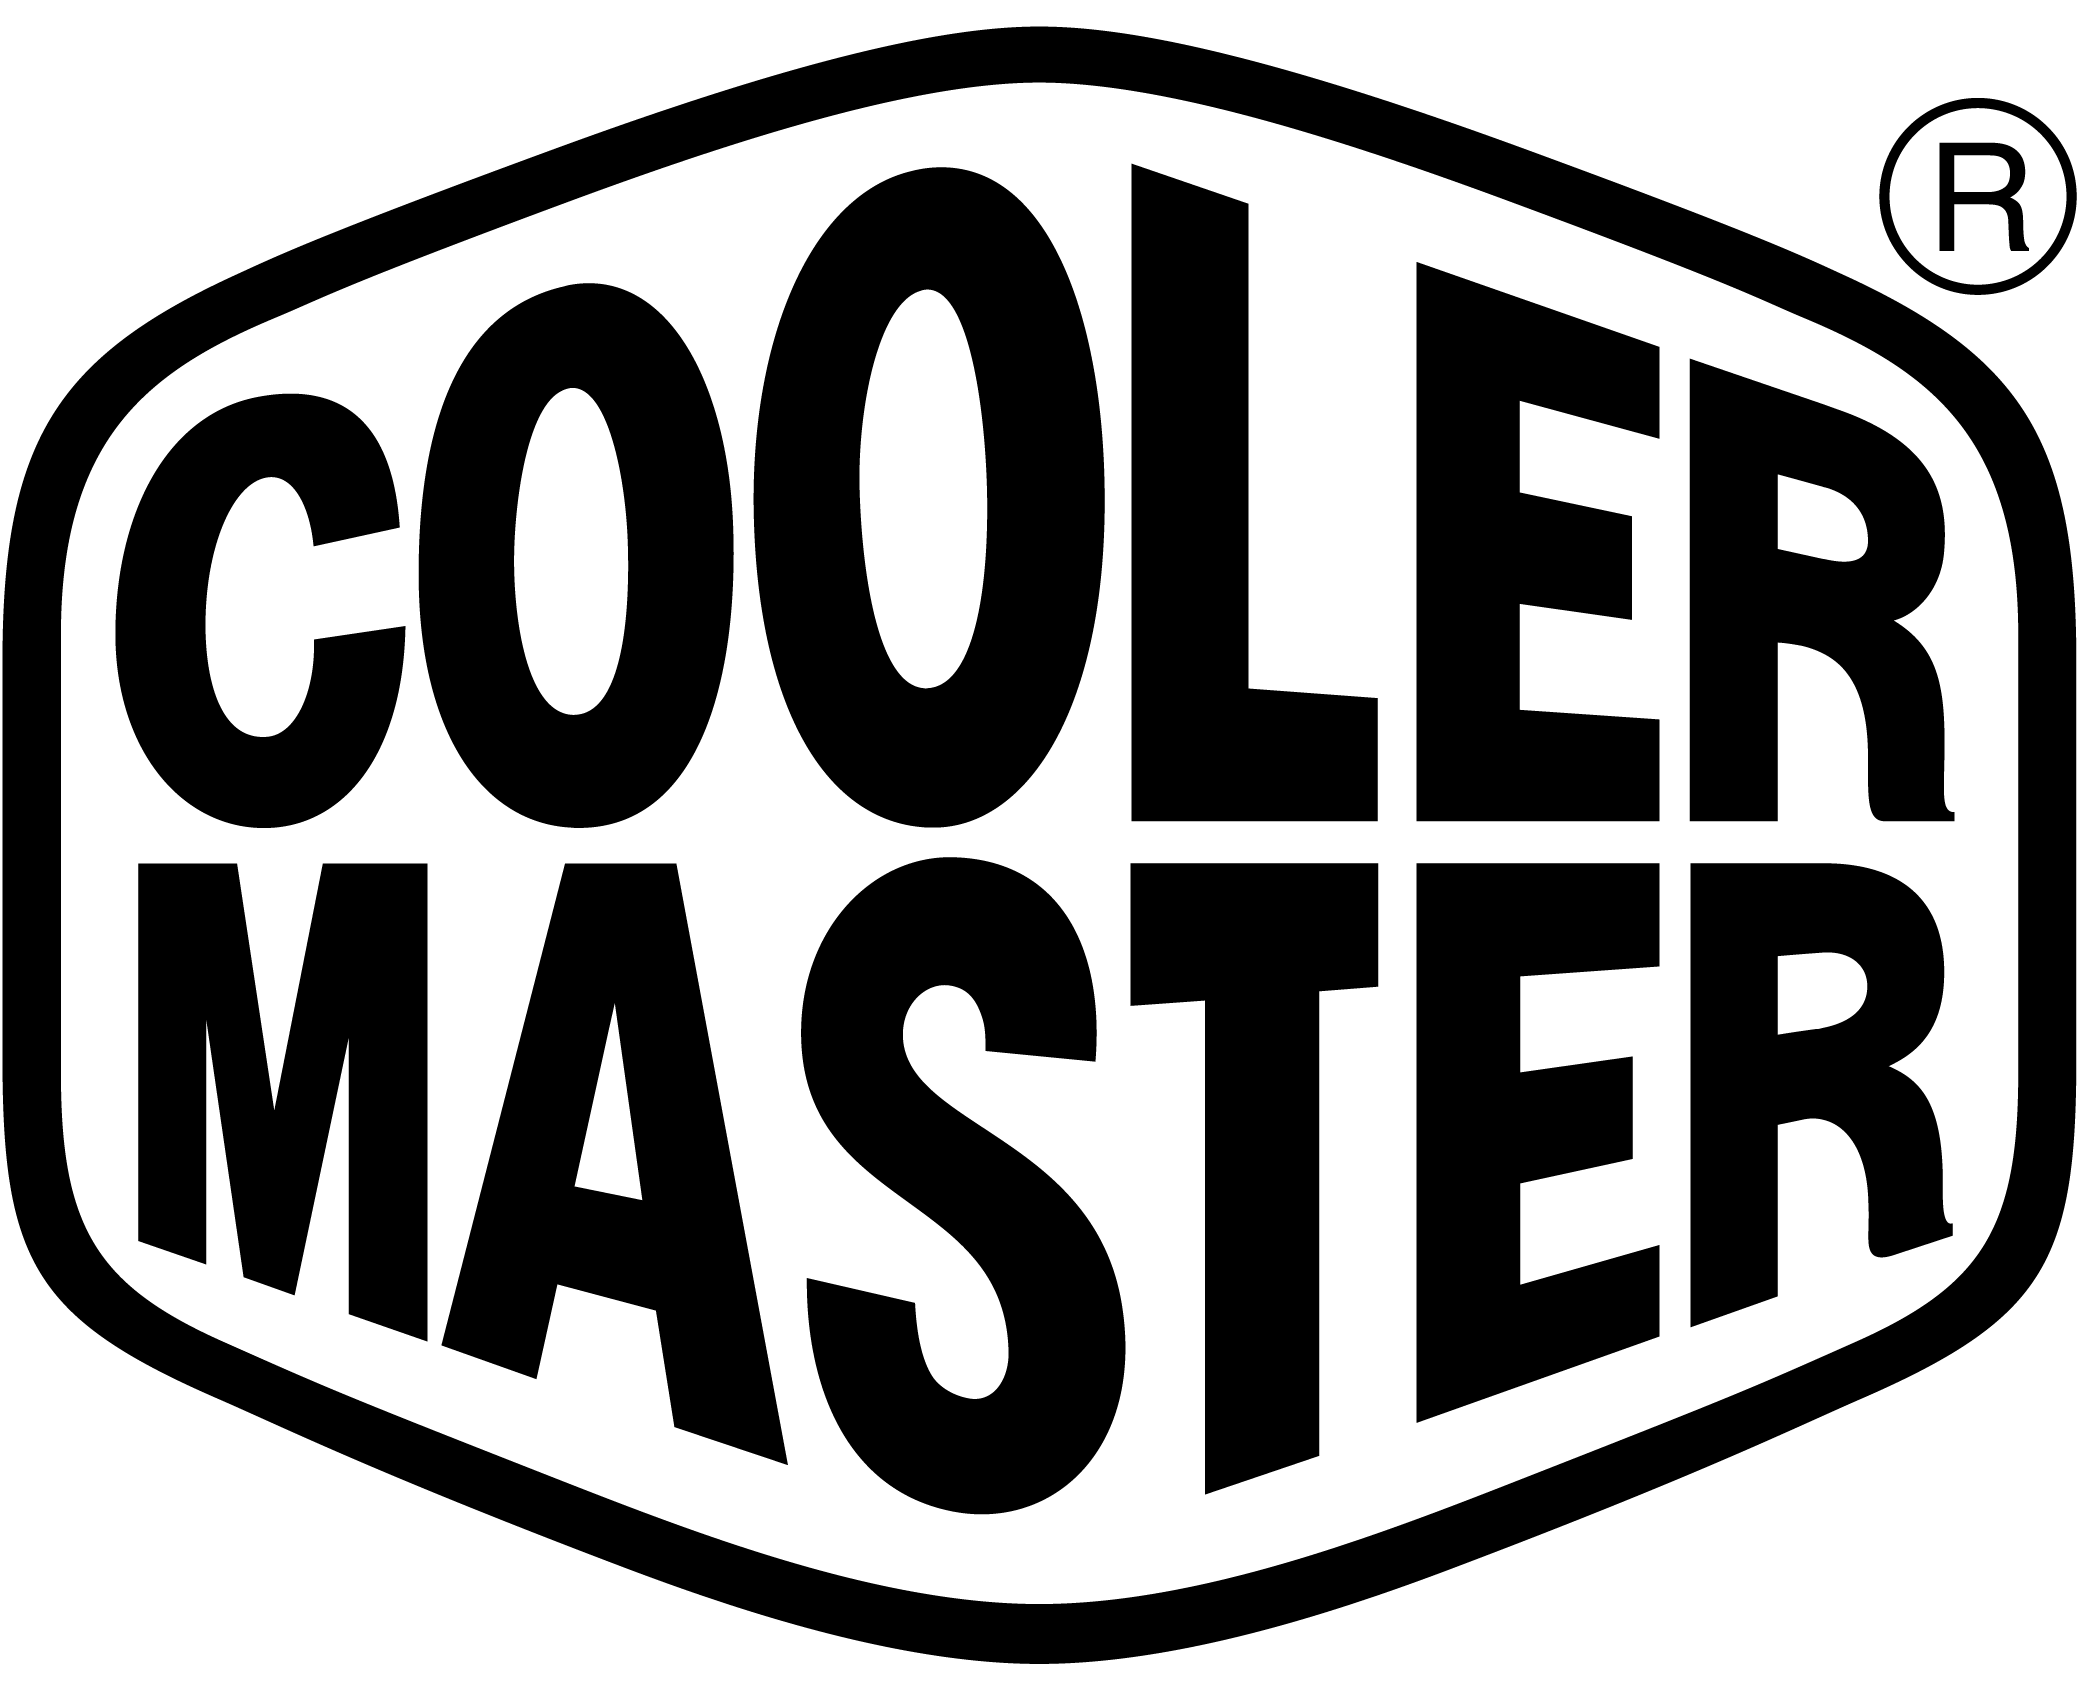 COOLER MASTER